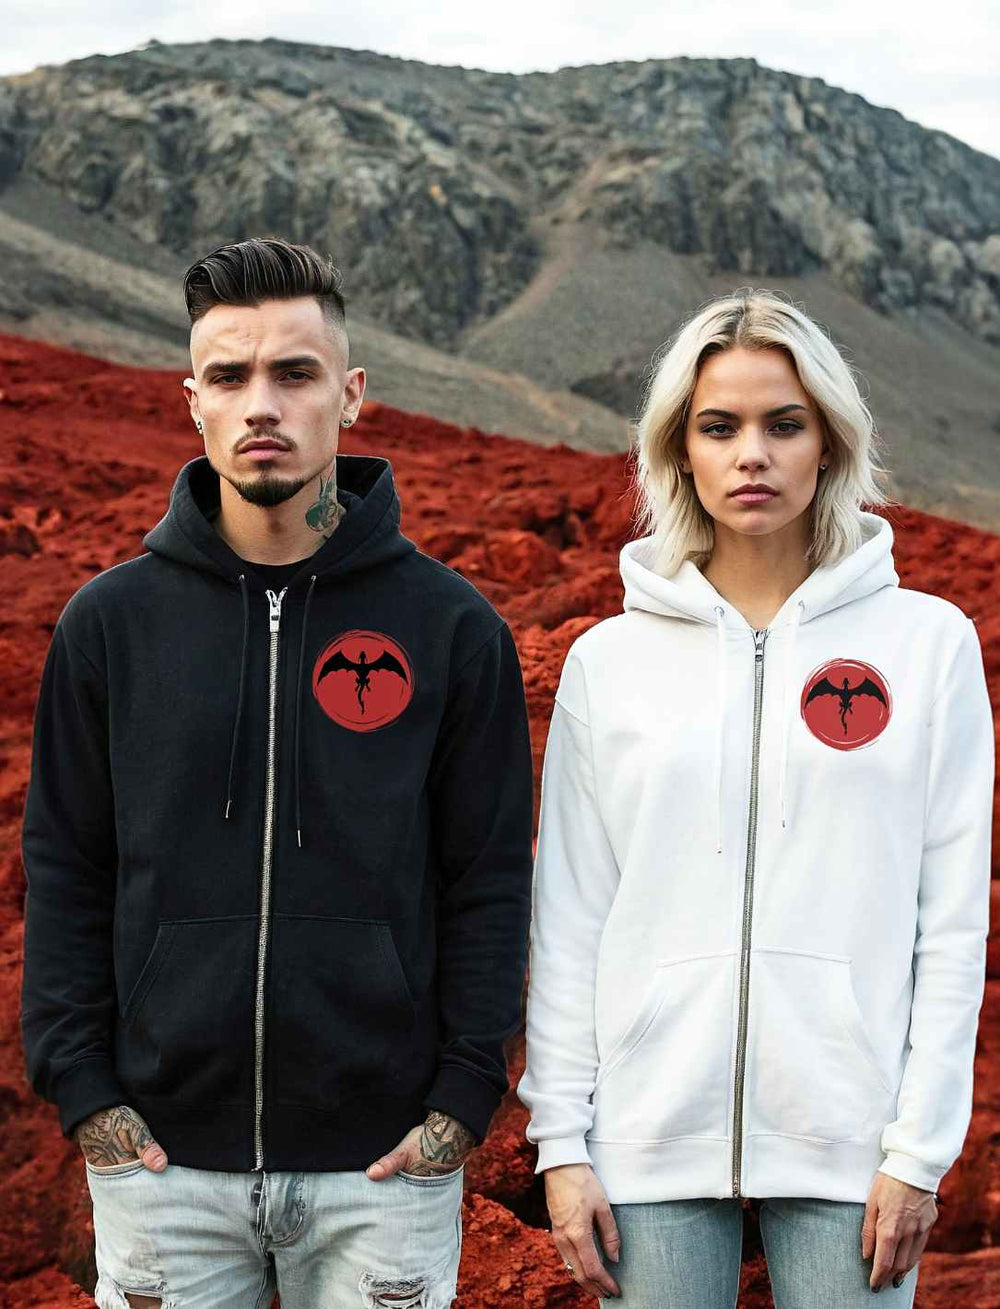 Ein männliches und ein weibliches Model posieren nebeneinander in 'Saga of the Dragon' Zip Hoodies, Schwarz und Weiß, vor einem Hintergrund roter Erde und ferner Berge, ein Bild kraftvoller Eleganz.